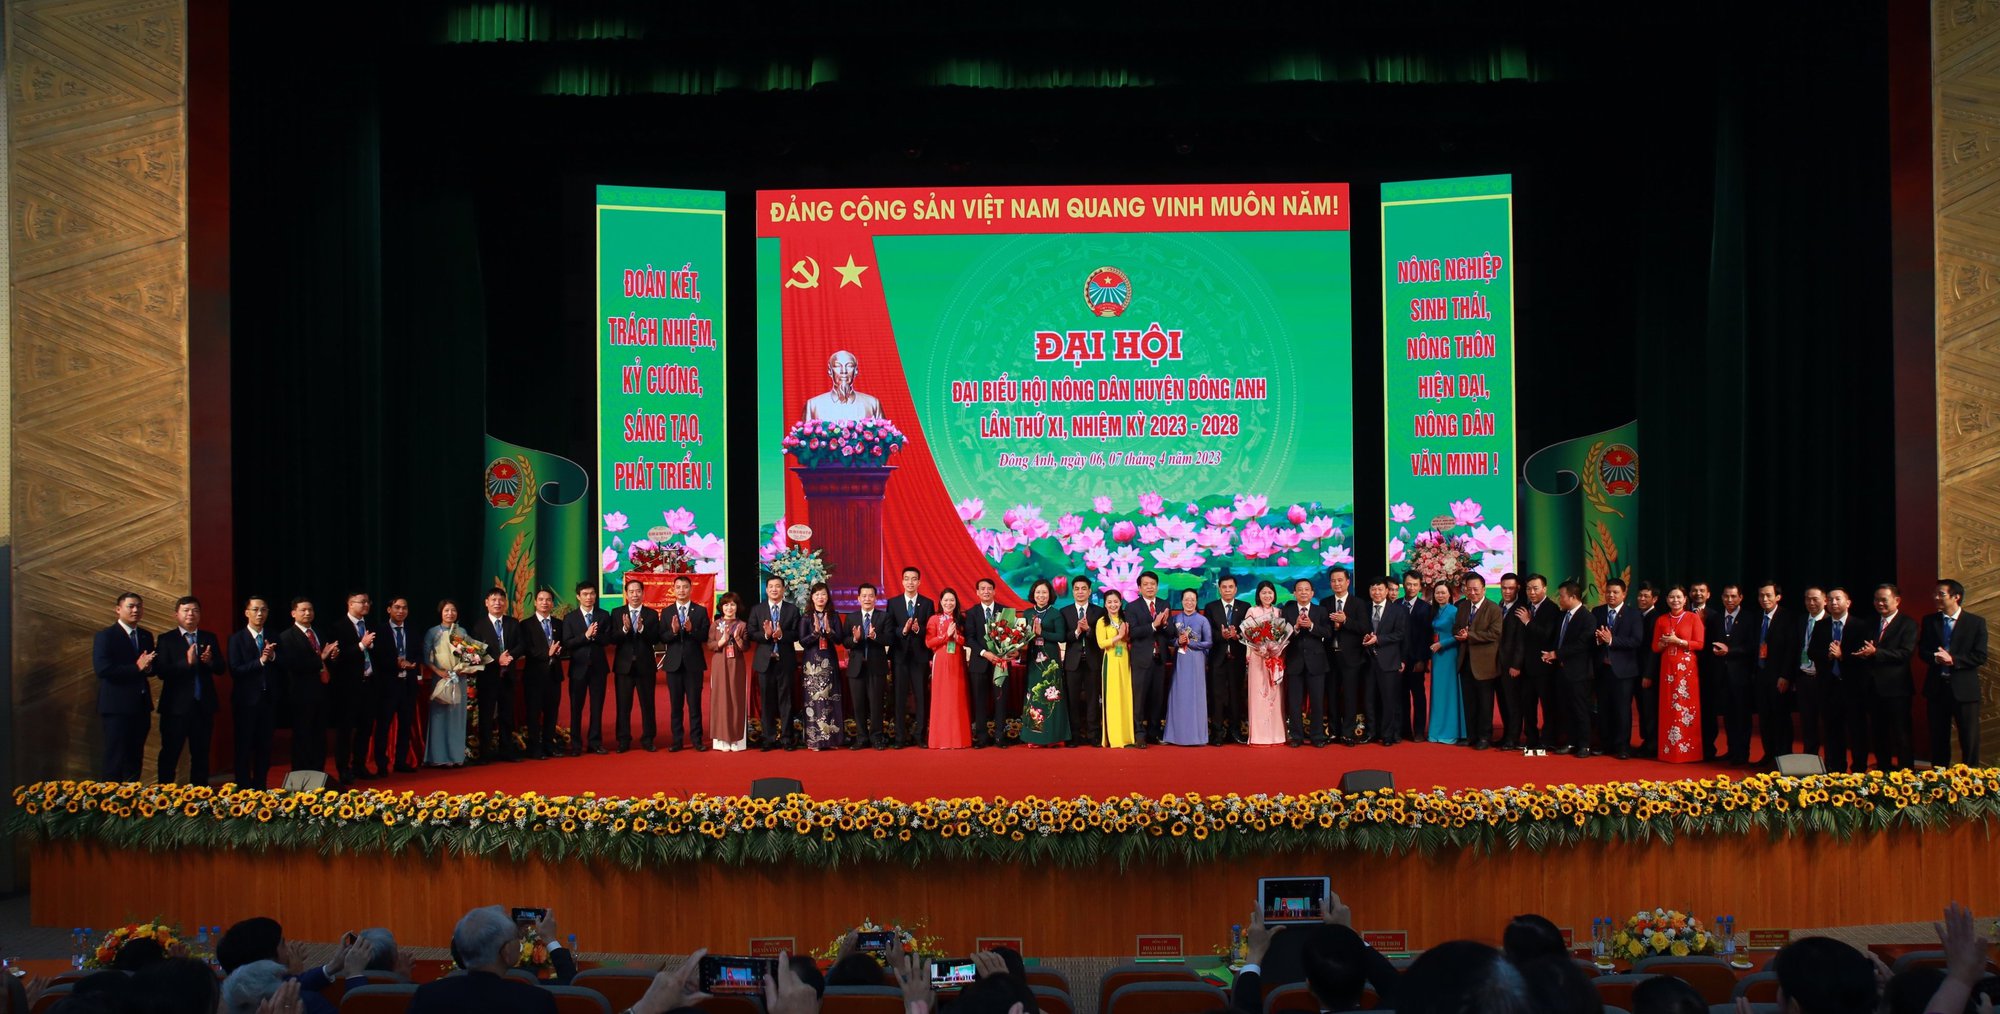 Hà Nội: Đại hội đại biểu Hội Nông dân huyện Đông Anh, ông Ngô Văn Lệ tái đắc cử chức Chủ tịch - Ảnh 5.